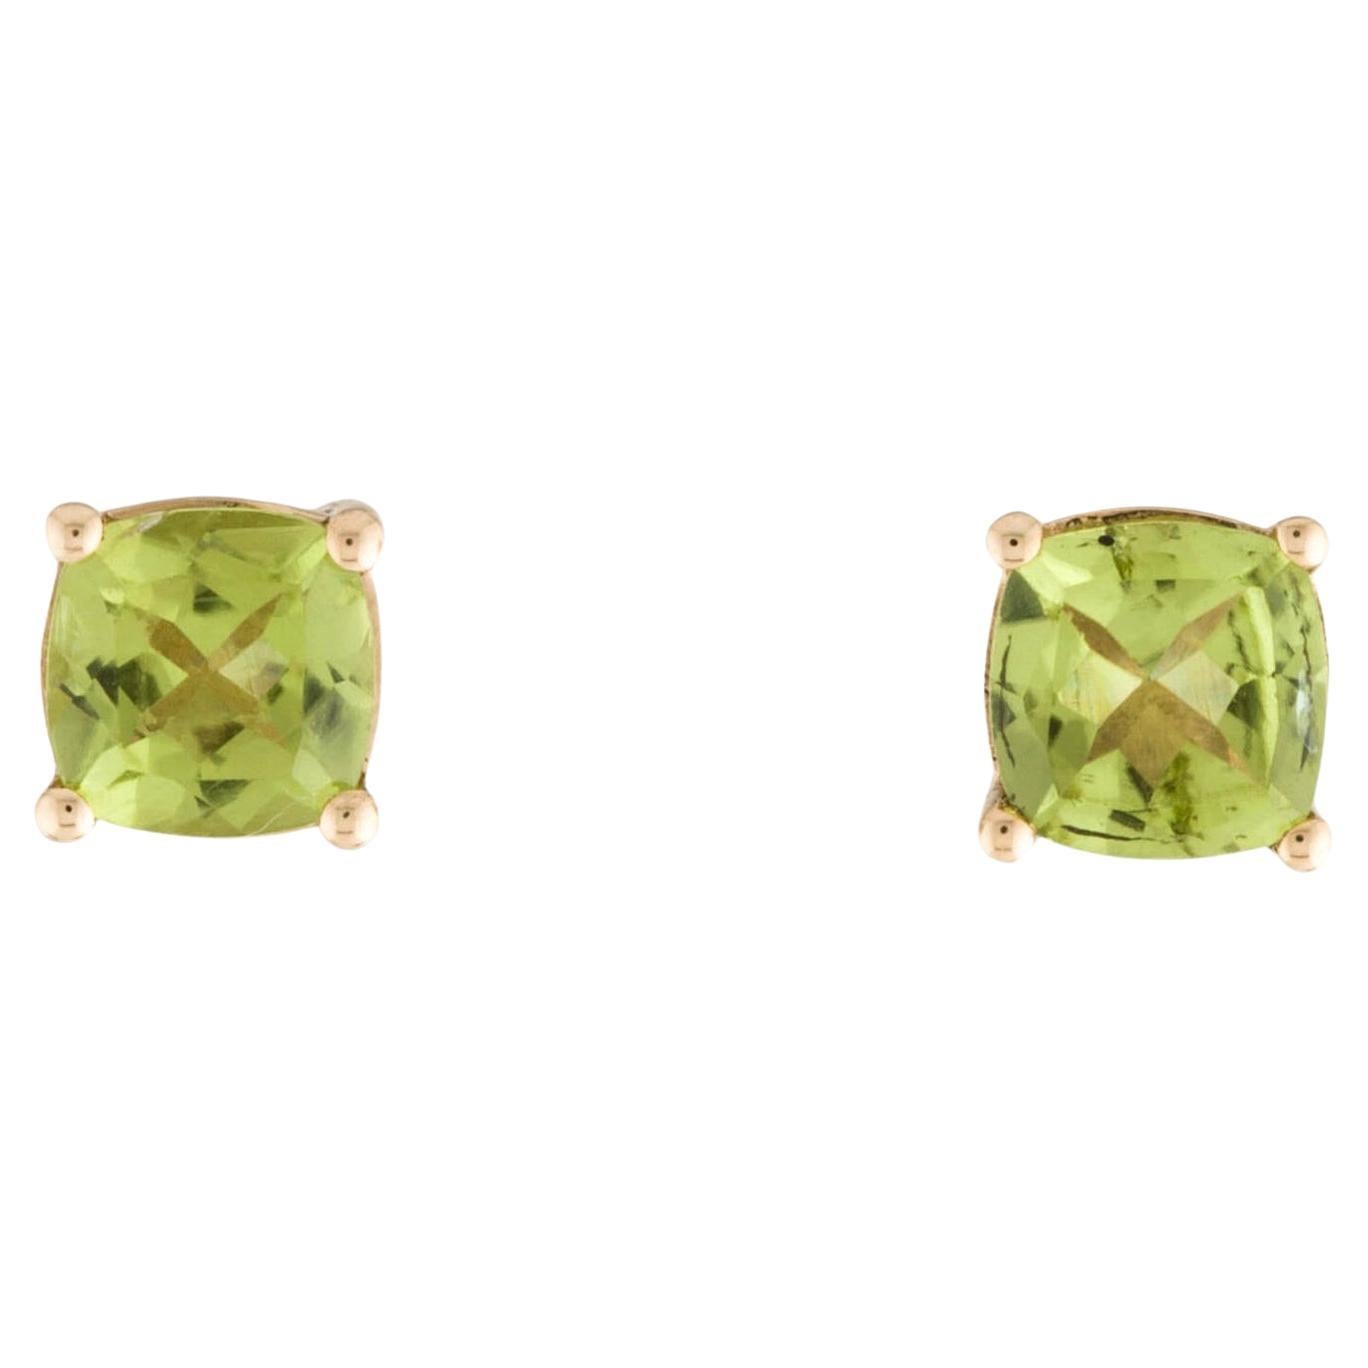 Chic 14K 2.02ctw Peridot Stud Earrings - Elegant Gemstone Jewelry Piece For Sale